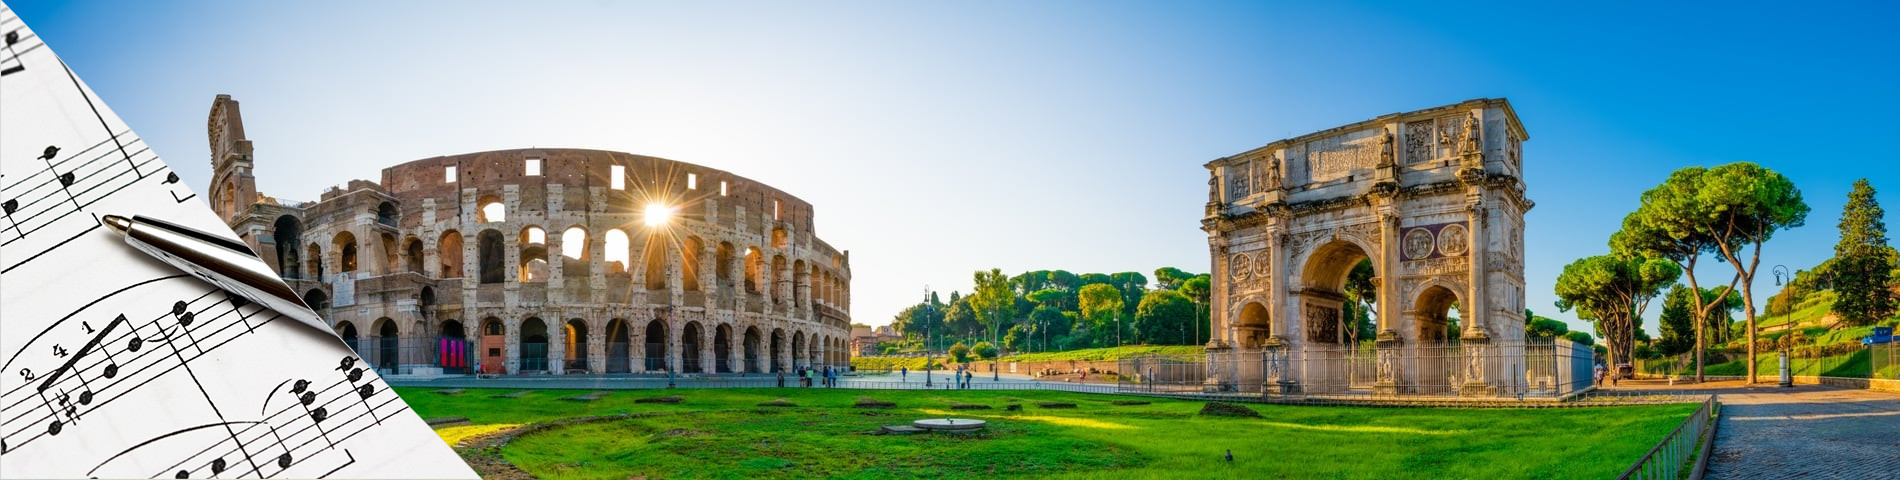 Rzym - Włoski & Muzyka